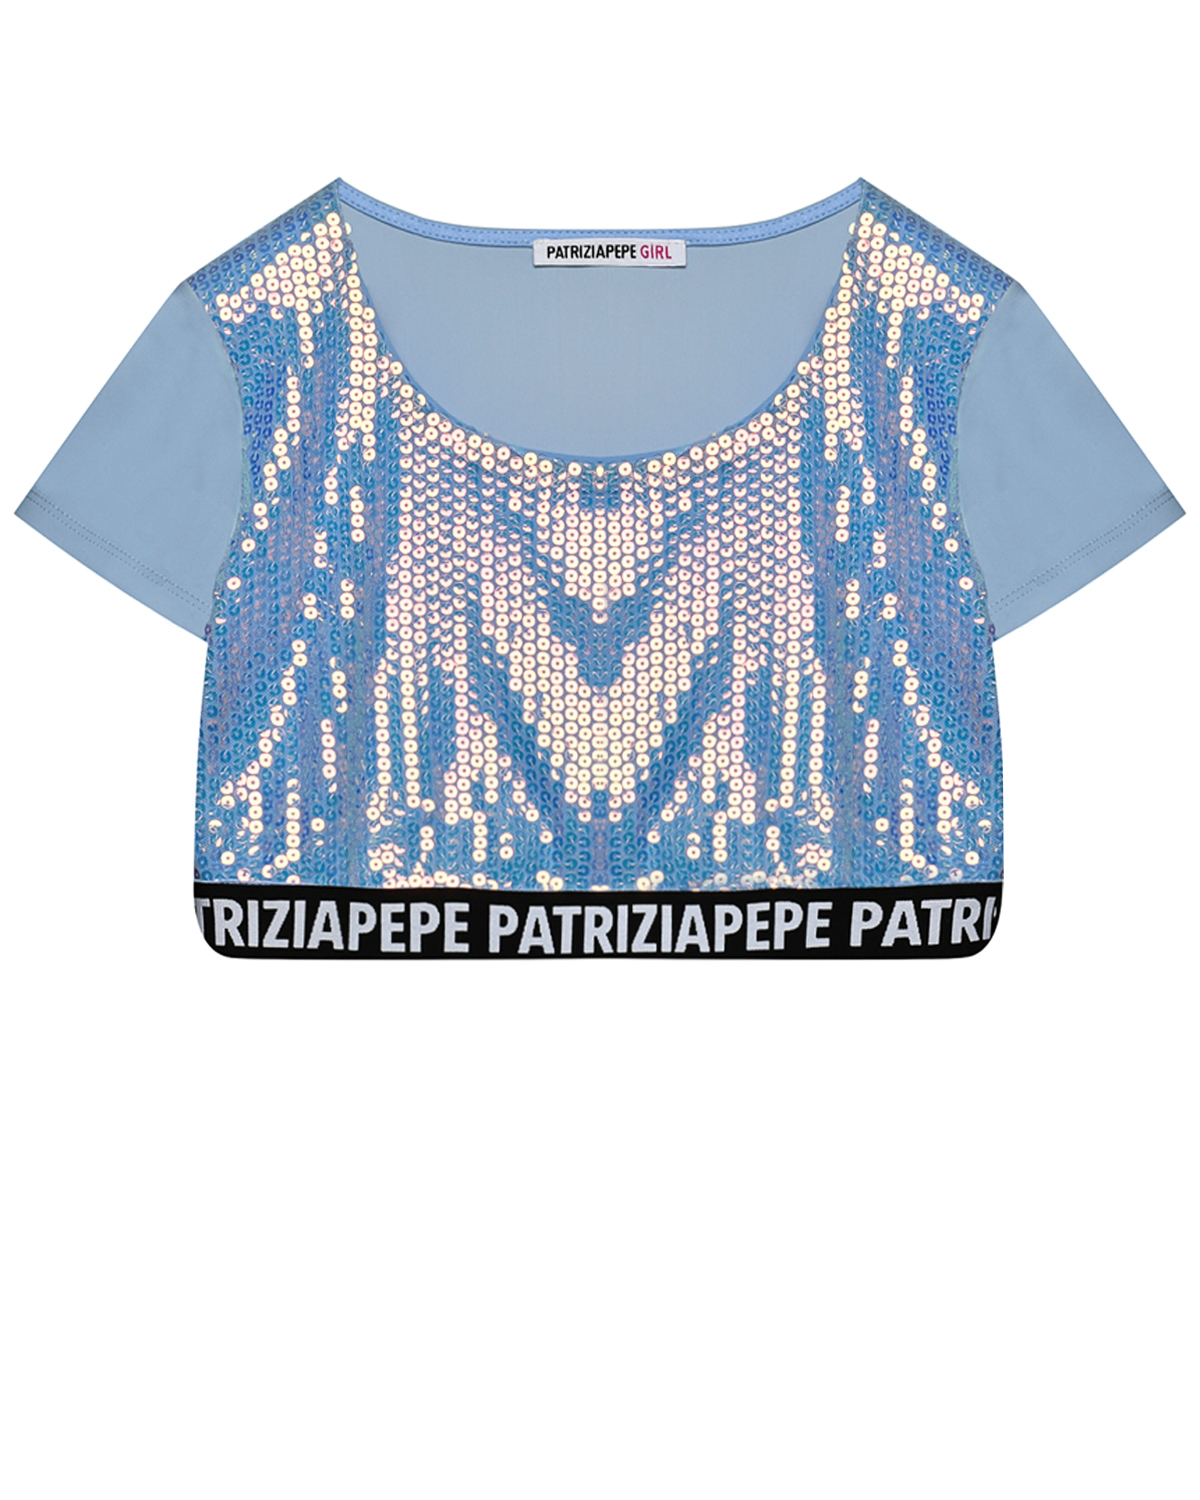 Топ с пайетками, контрастная полоска с лого Patrizia Pepe, размер 164, цвет нет цвета - фото 1